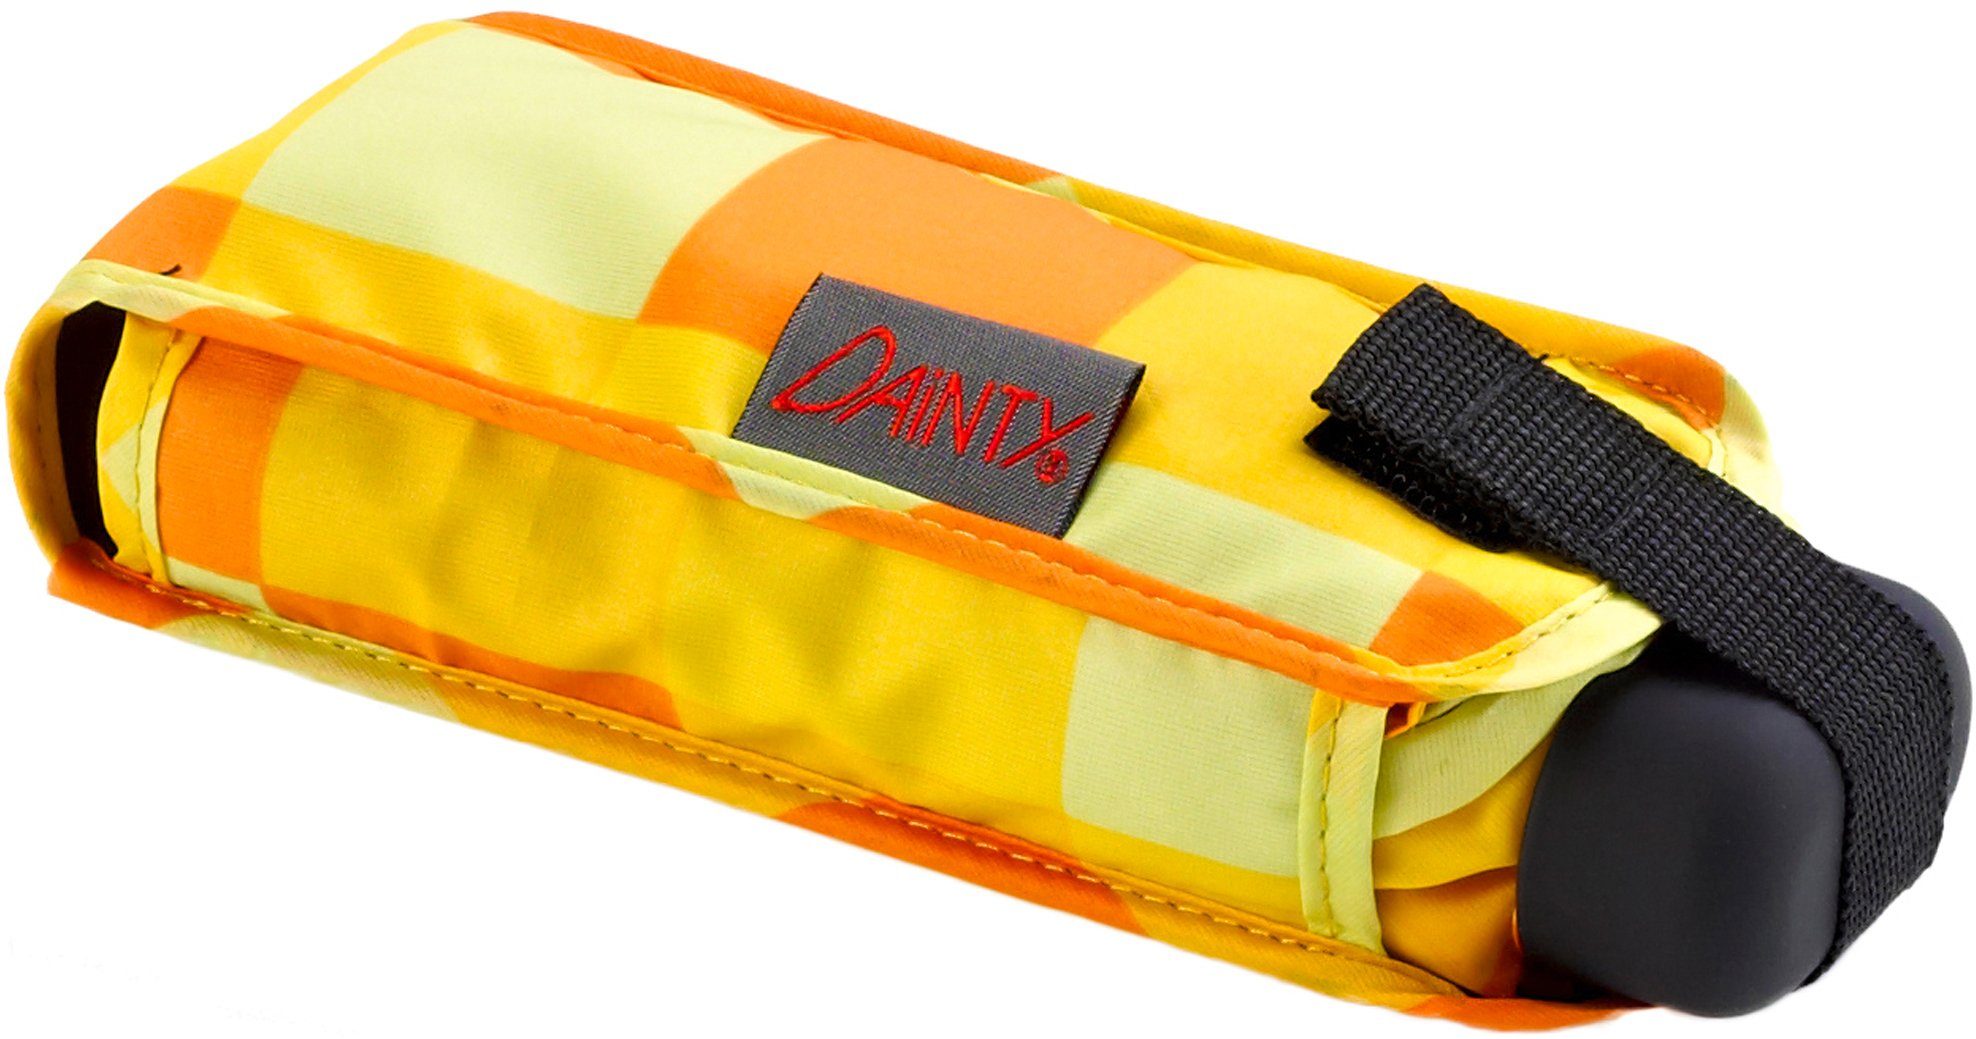 EuroSCHIRM® Taschenregenschirm Dainty, gelb orange, und extra kurz Karo flach